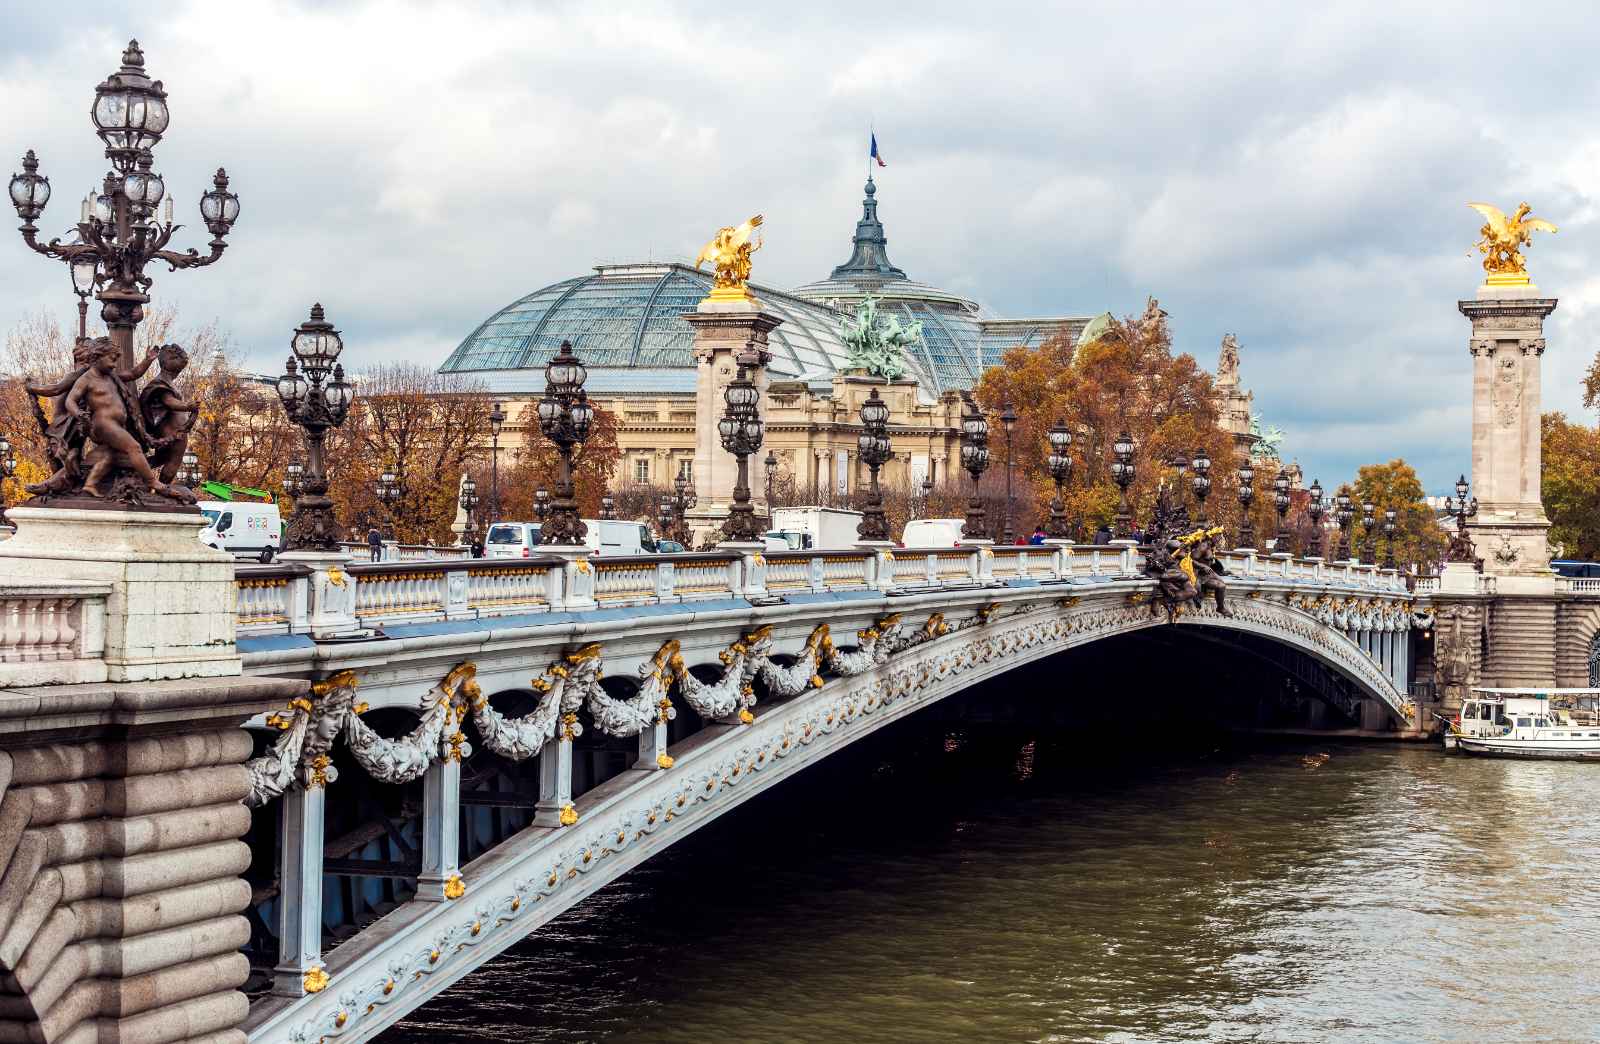 Paris in October Alexander III Bridge on river Seine